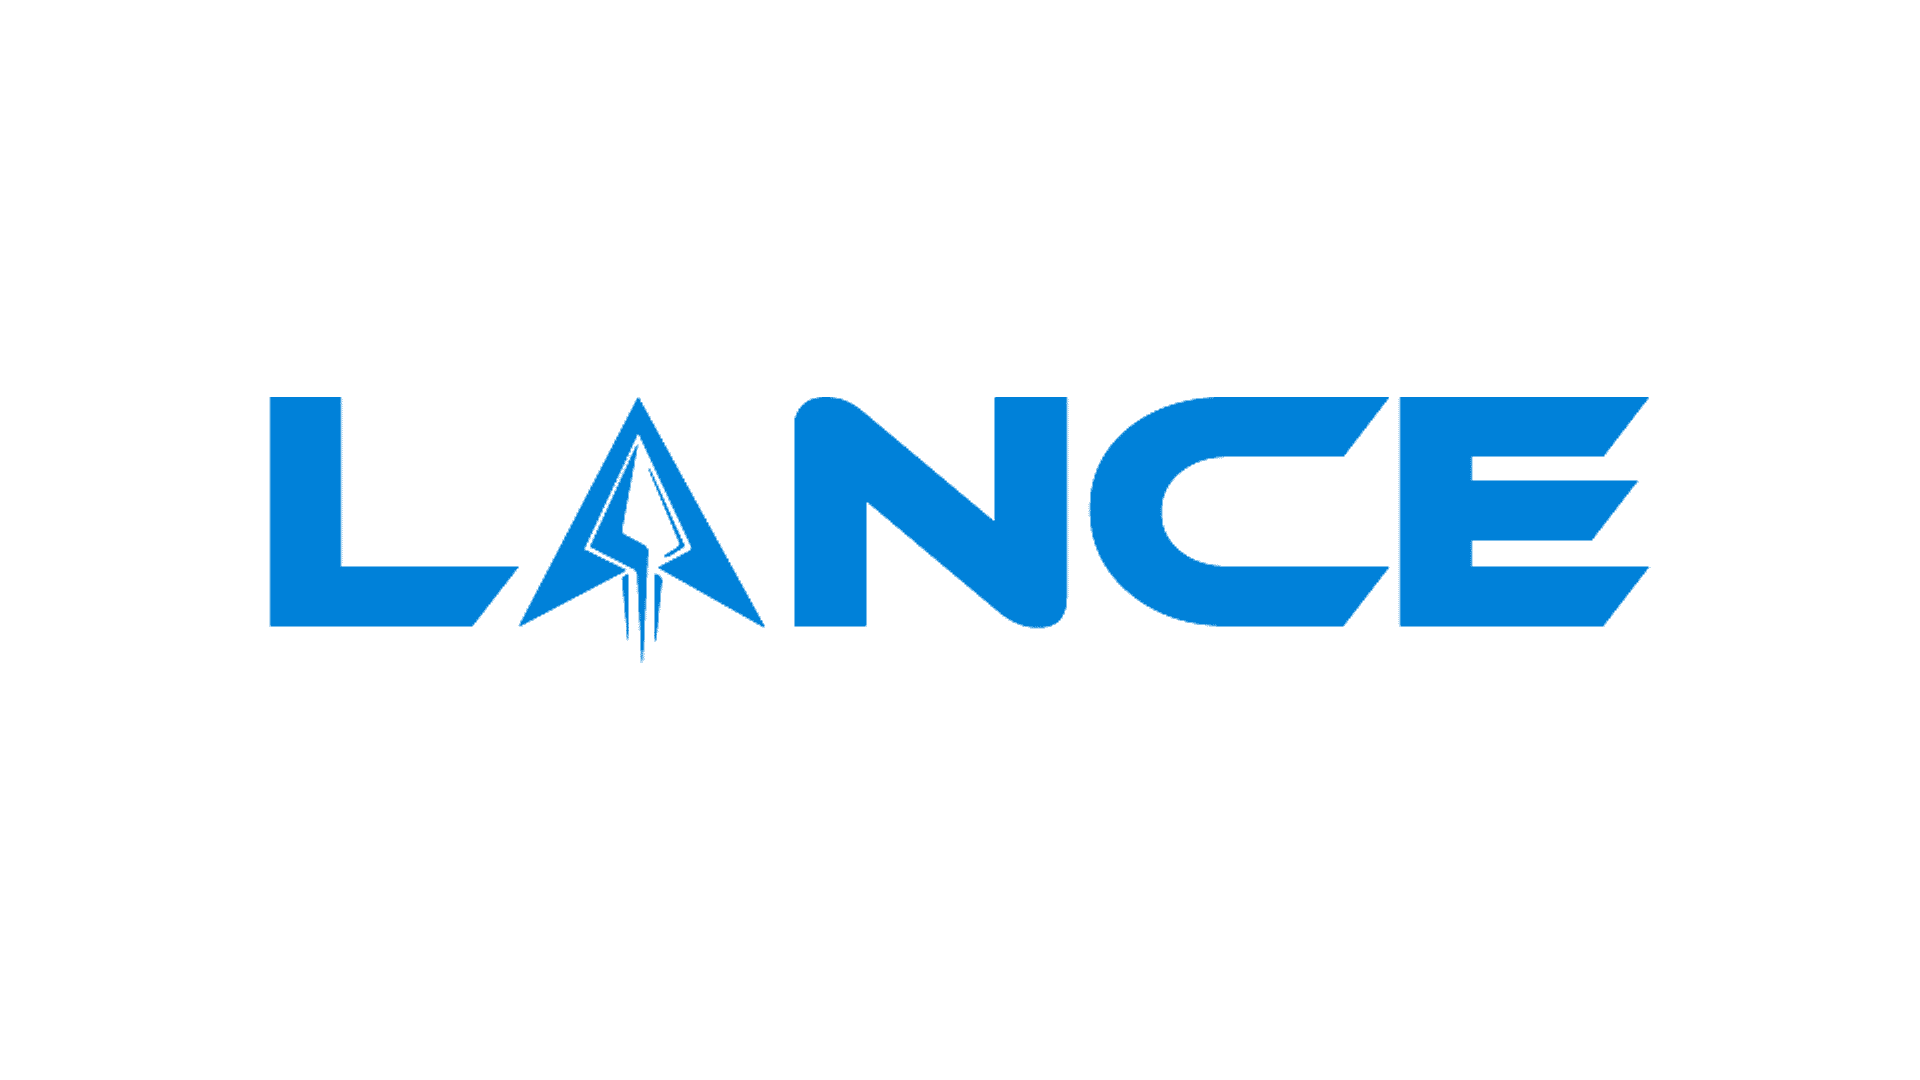 Lancesoft - Crunchbase Company Profile & Funding